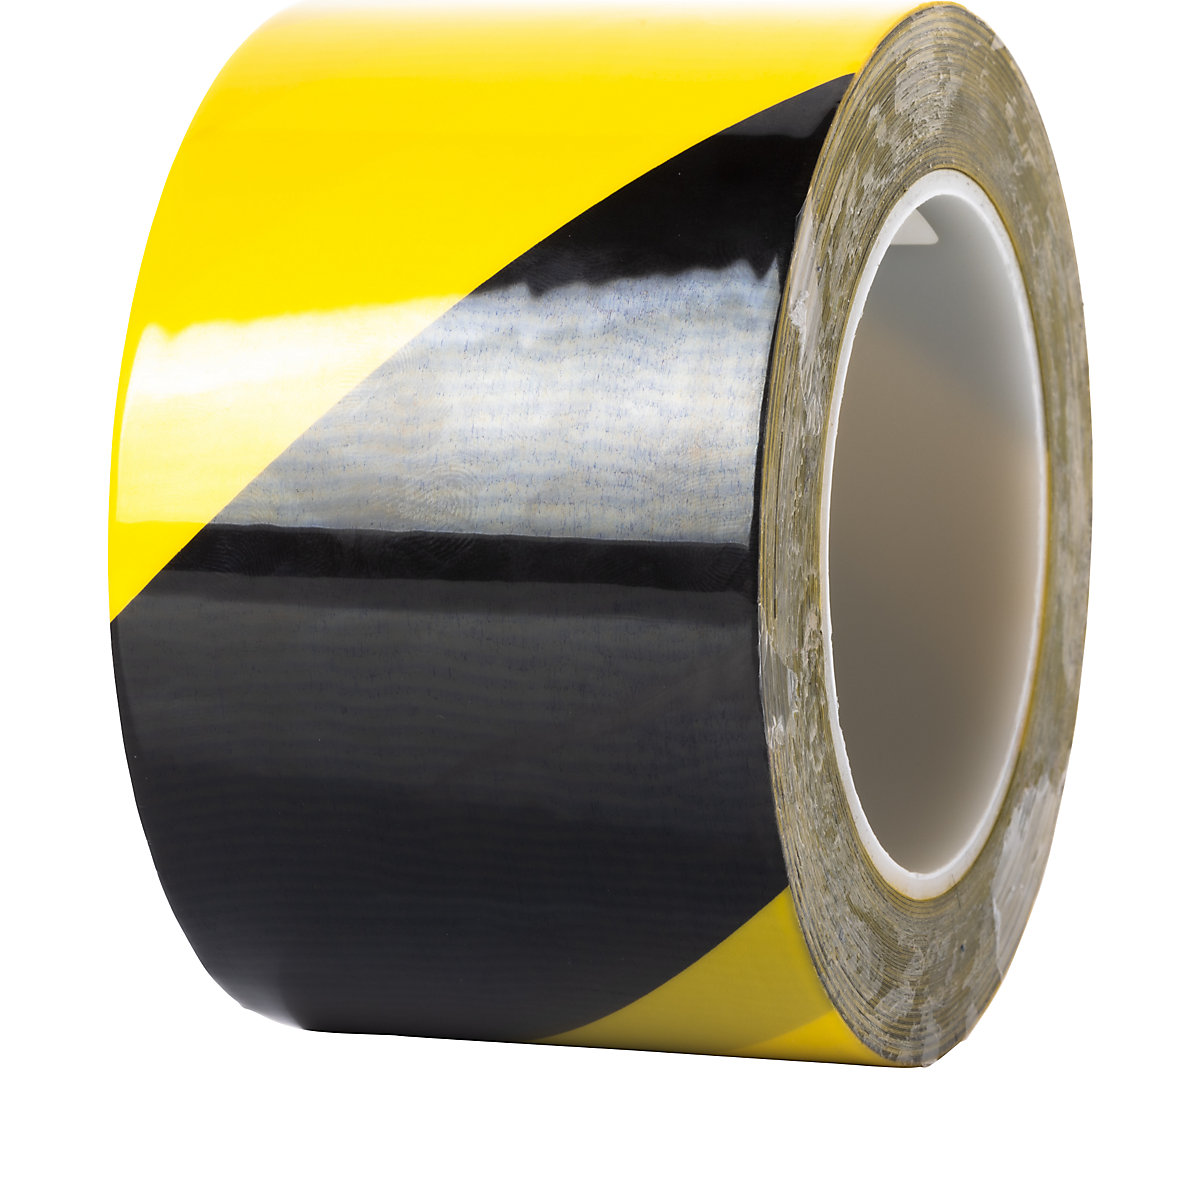 Traka za označavanje podova, posebno snažna – Ampere, širina 75 mm, debljina 0,2 mm, u žutoj/crnoj boji-2